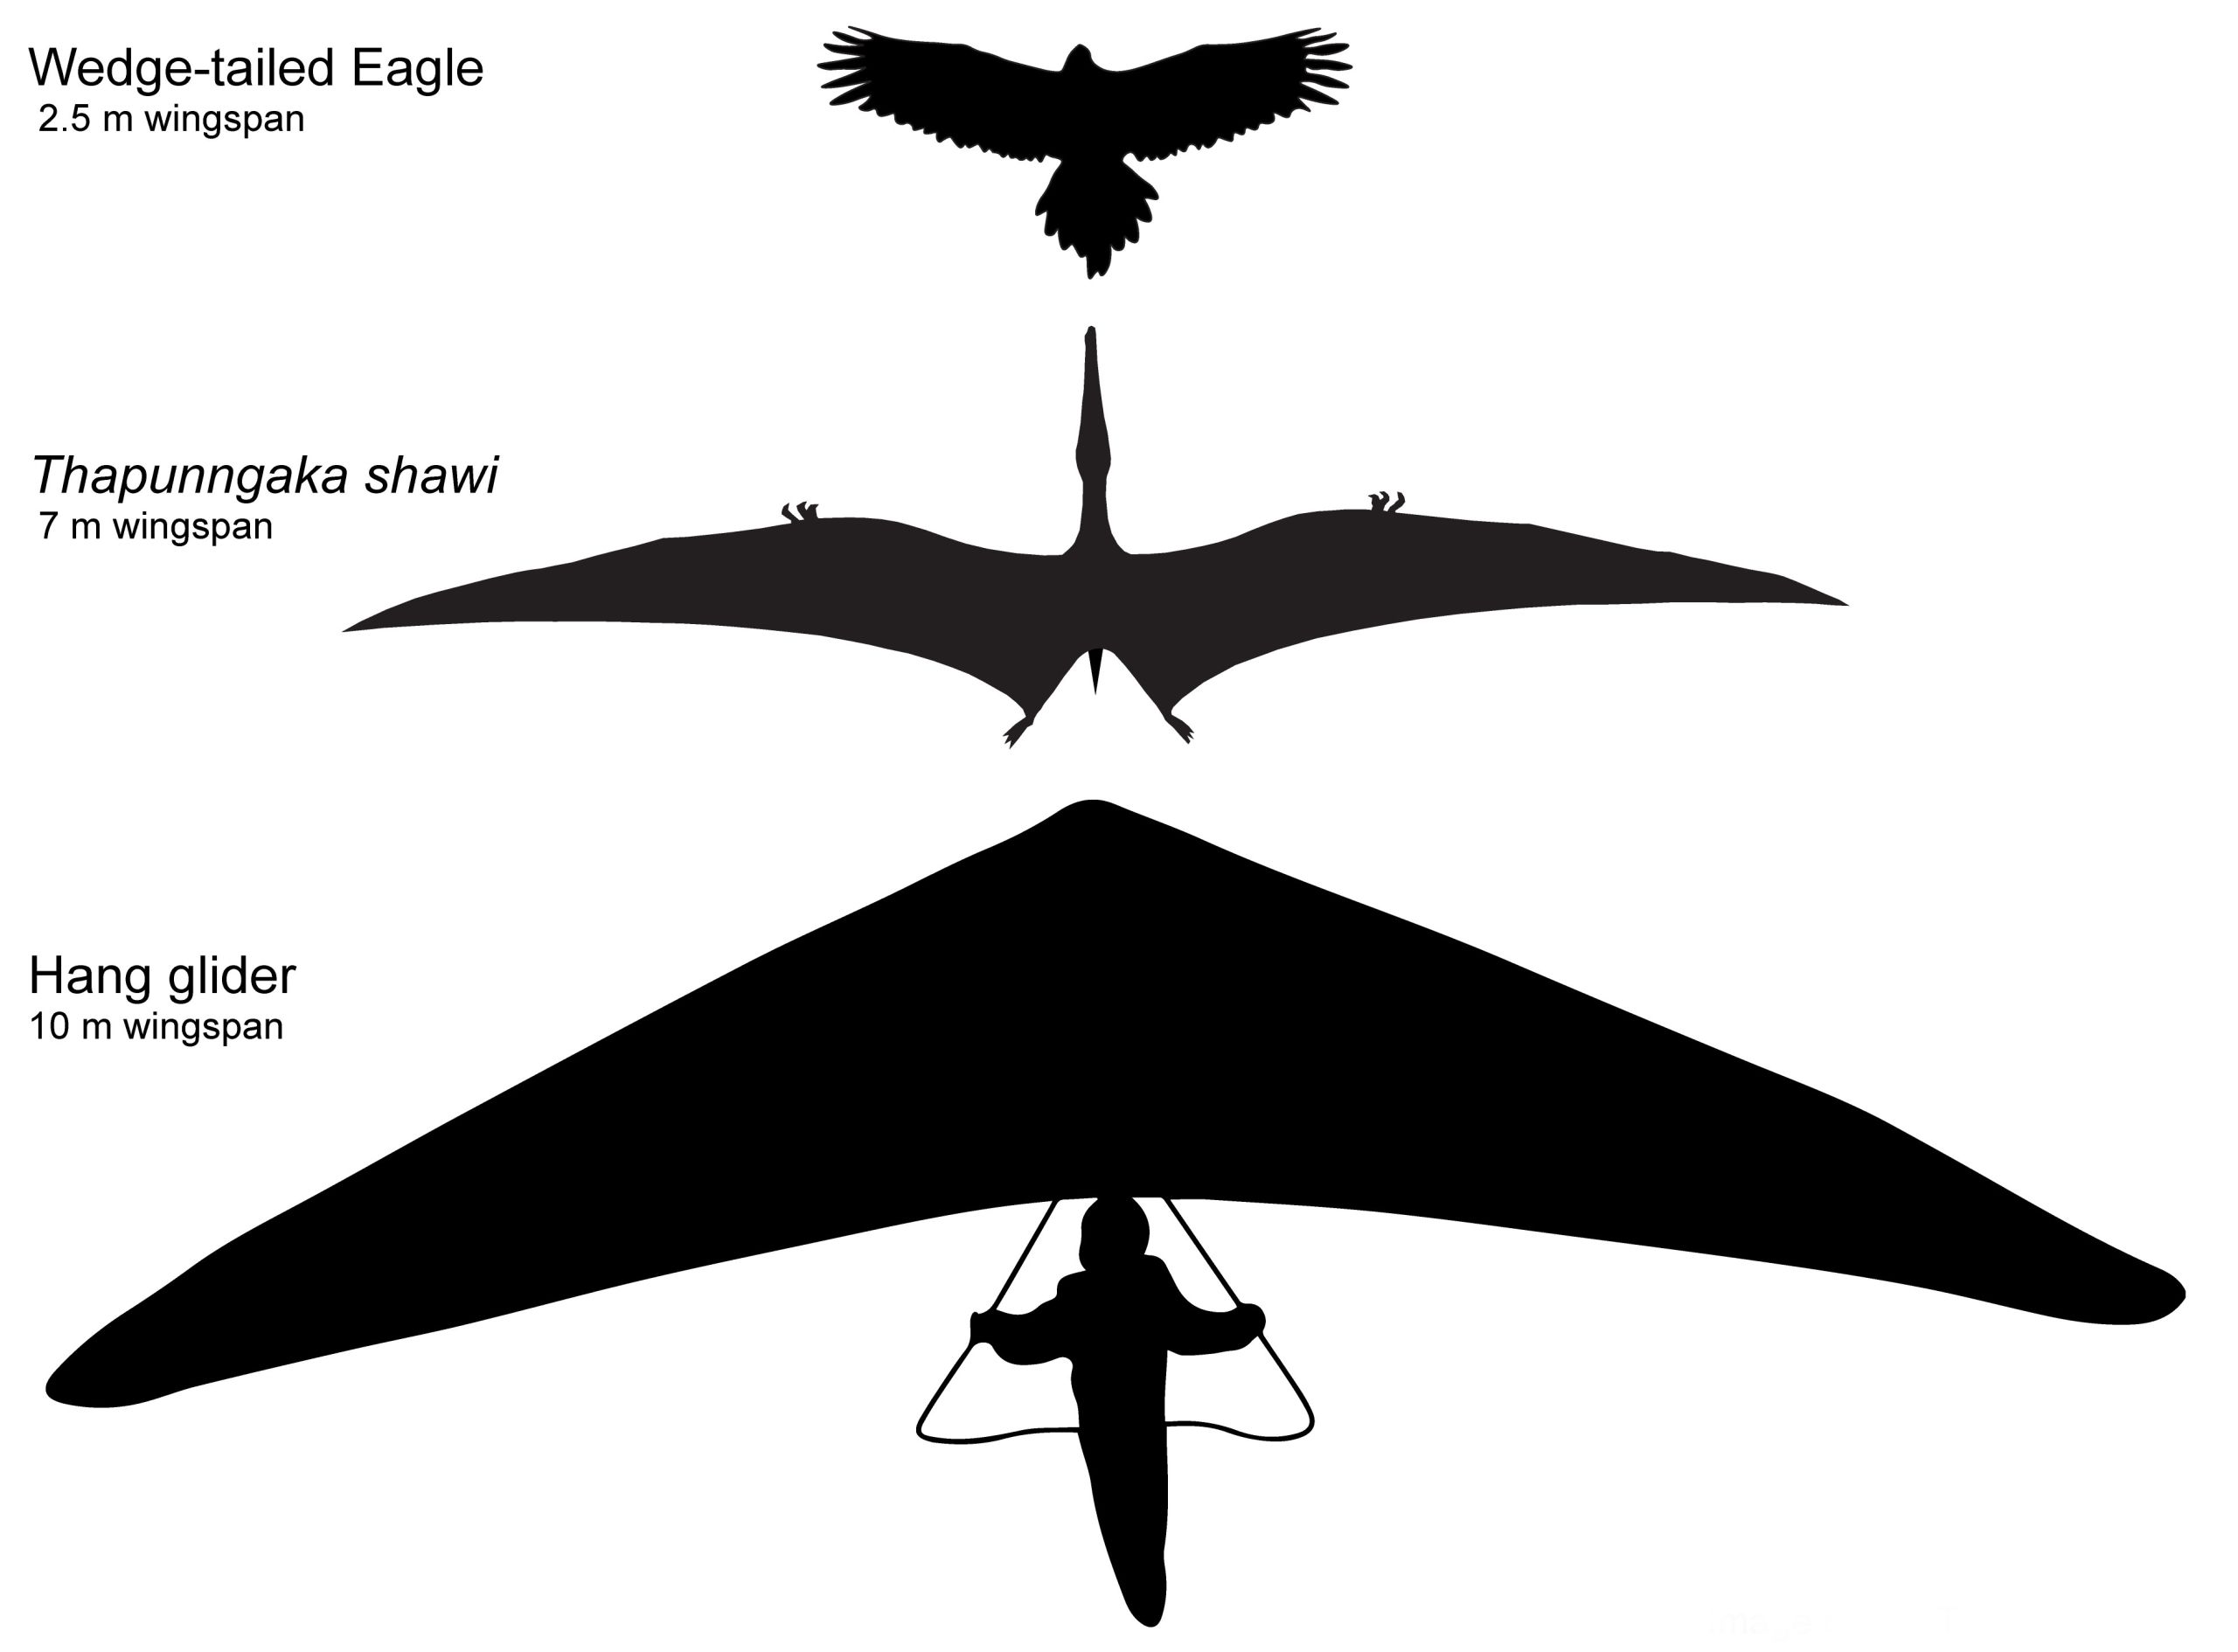 Kama kuyruklu bir kartal (7 m kanat açıklığı) ve bir yelken kanat (2.5 m 'kanat açıklığı') ile birlikte 10 m kanat açıklığına sahip Thapunngaka shawi'nin varsayımsal taslağı. Tim Richards